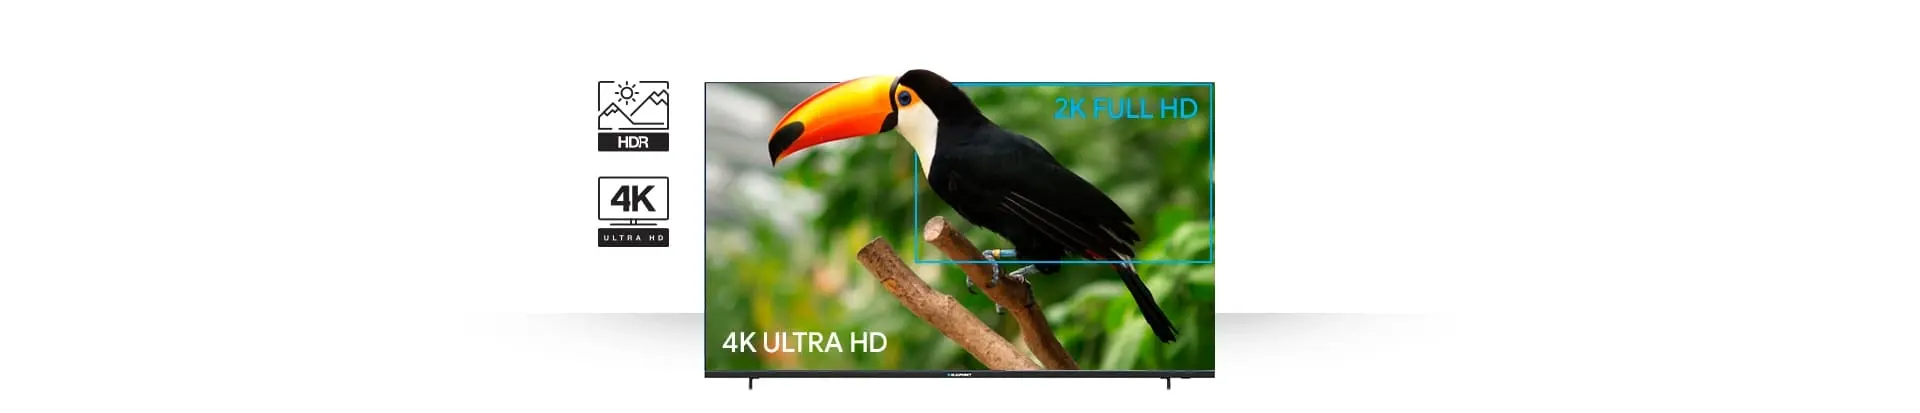 Телевизор UHD 4K Smart TV LED Blaupunkt 55UB5000